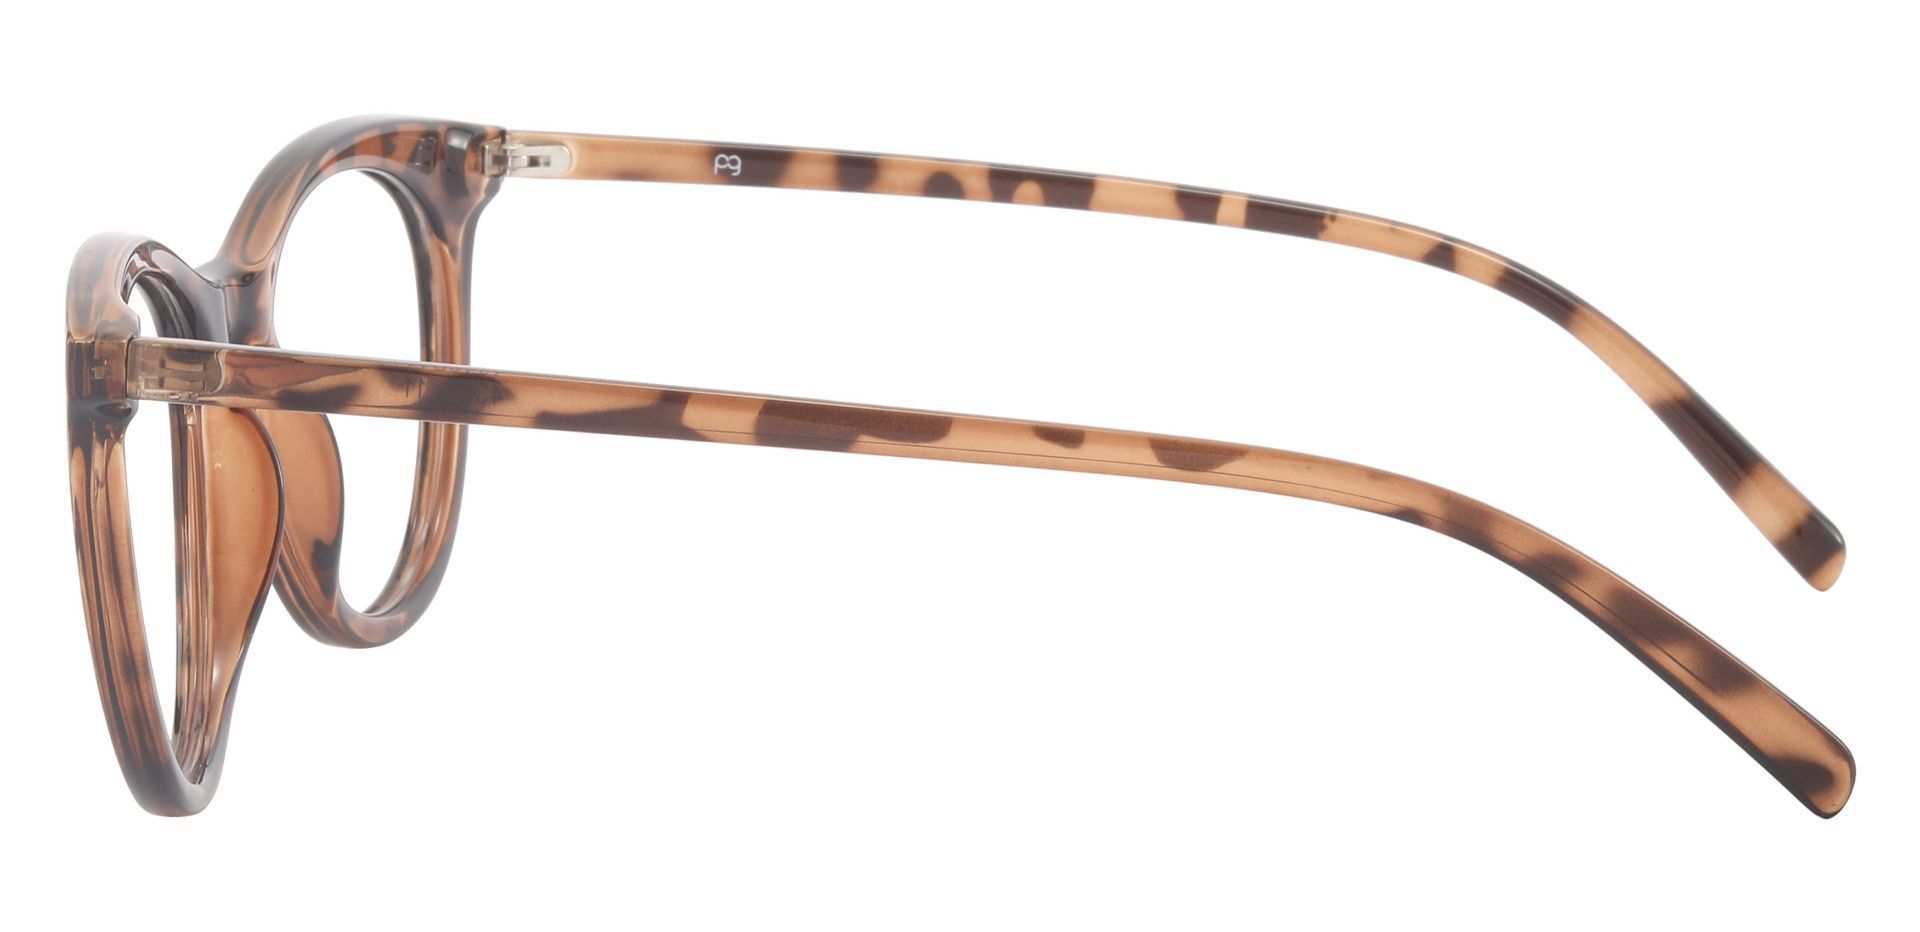 Valencia Cat Eye Prescription Glasses - Brown